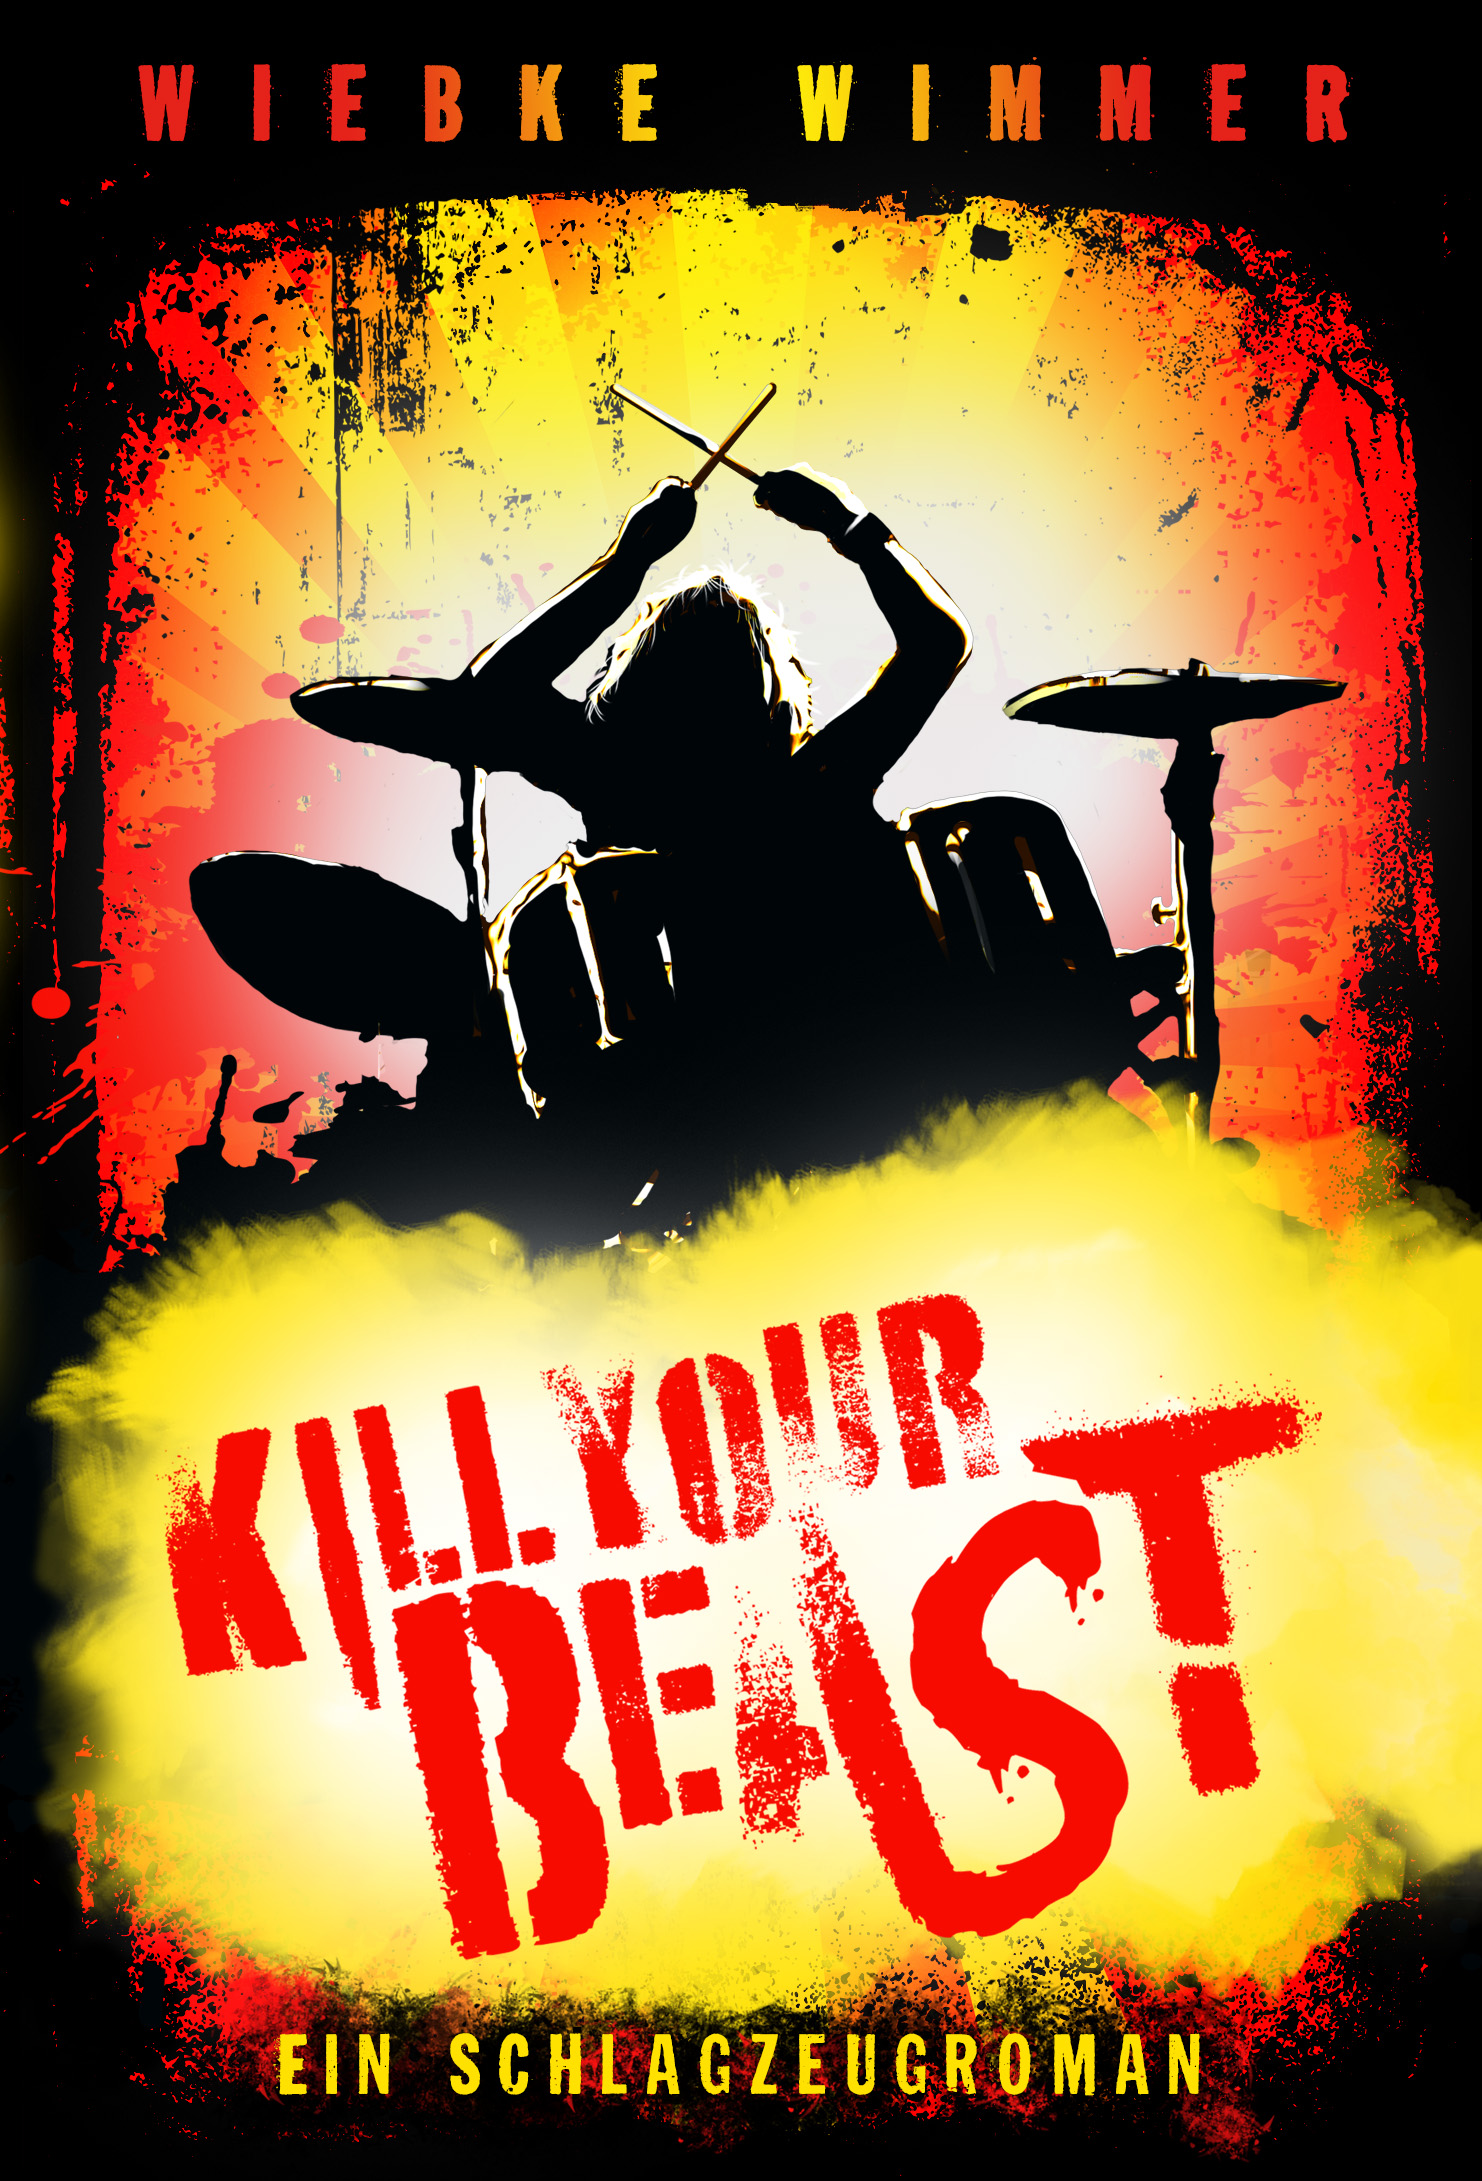 Kill Your Beast